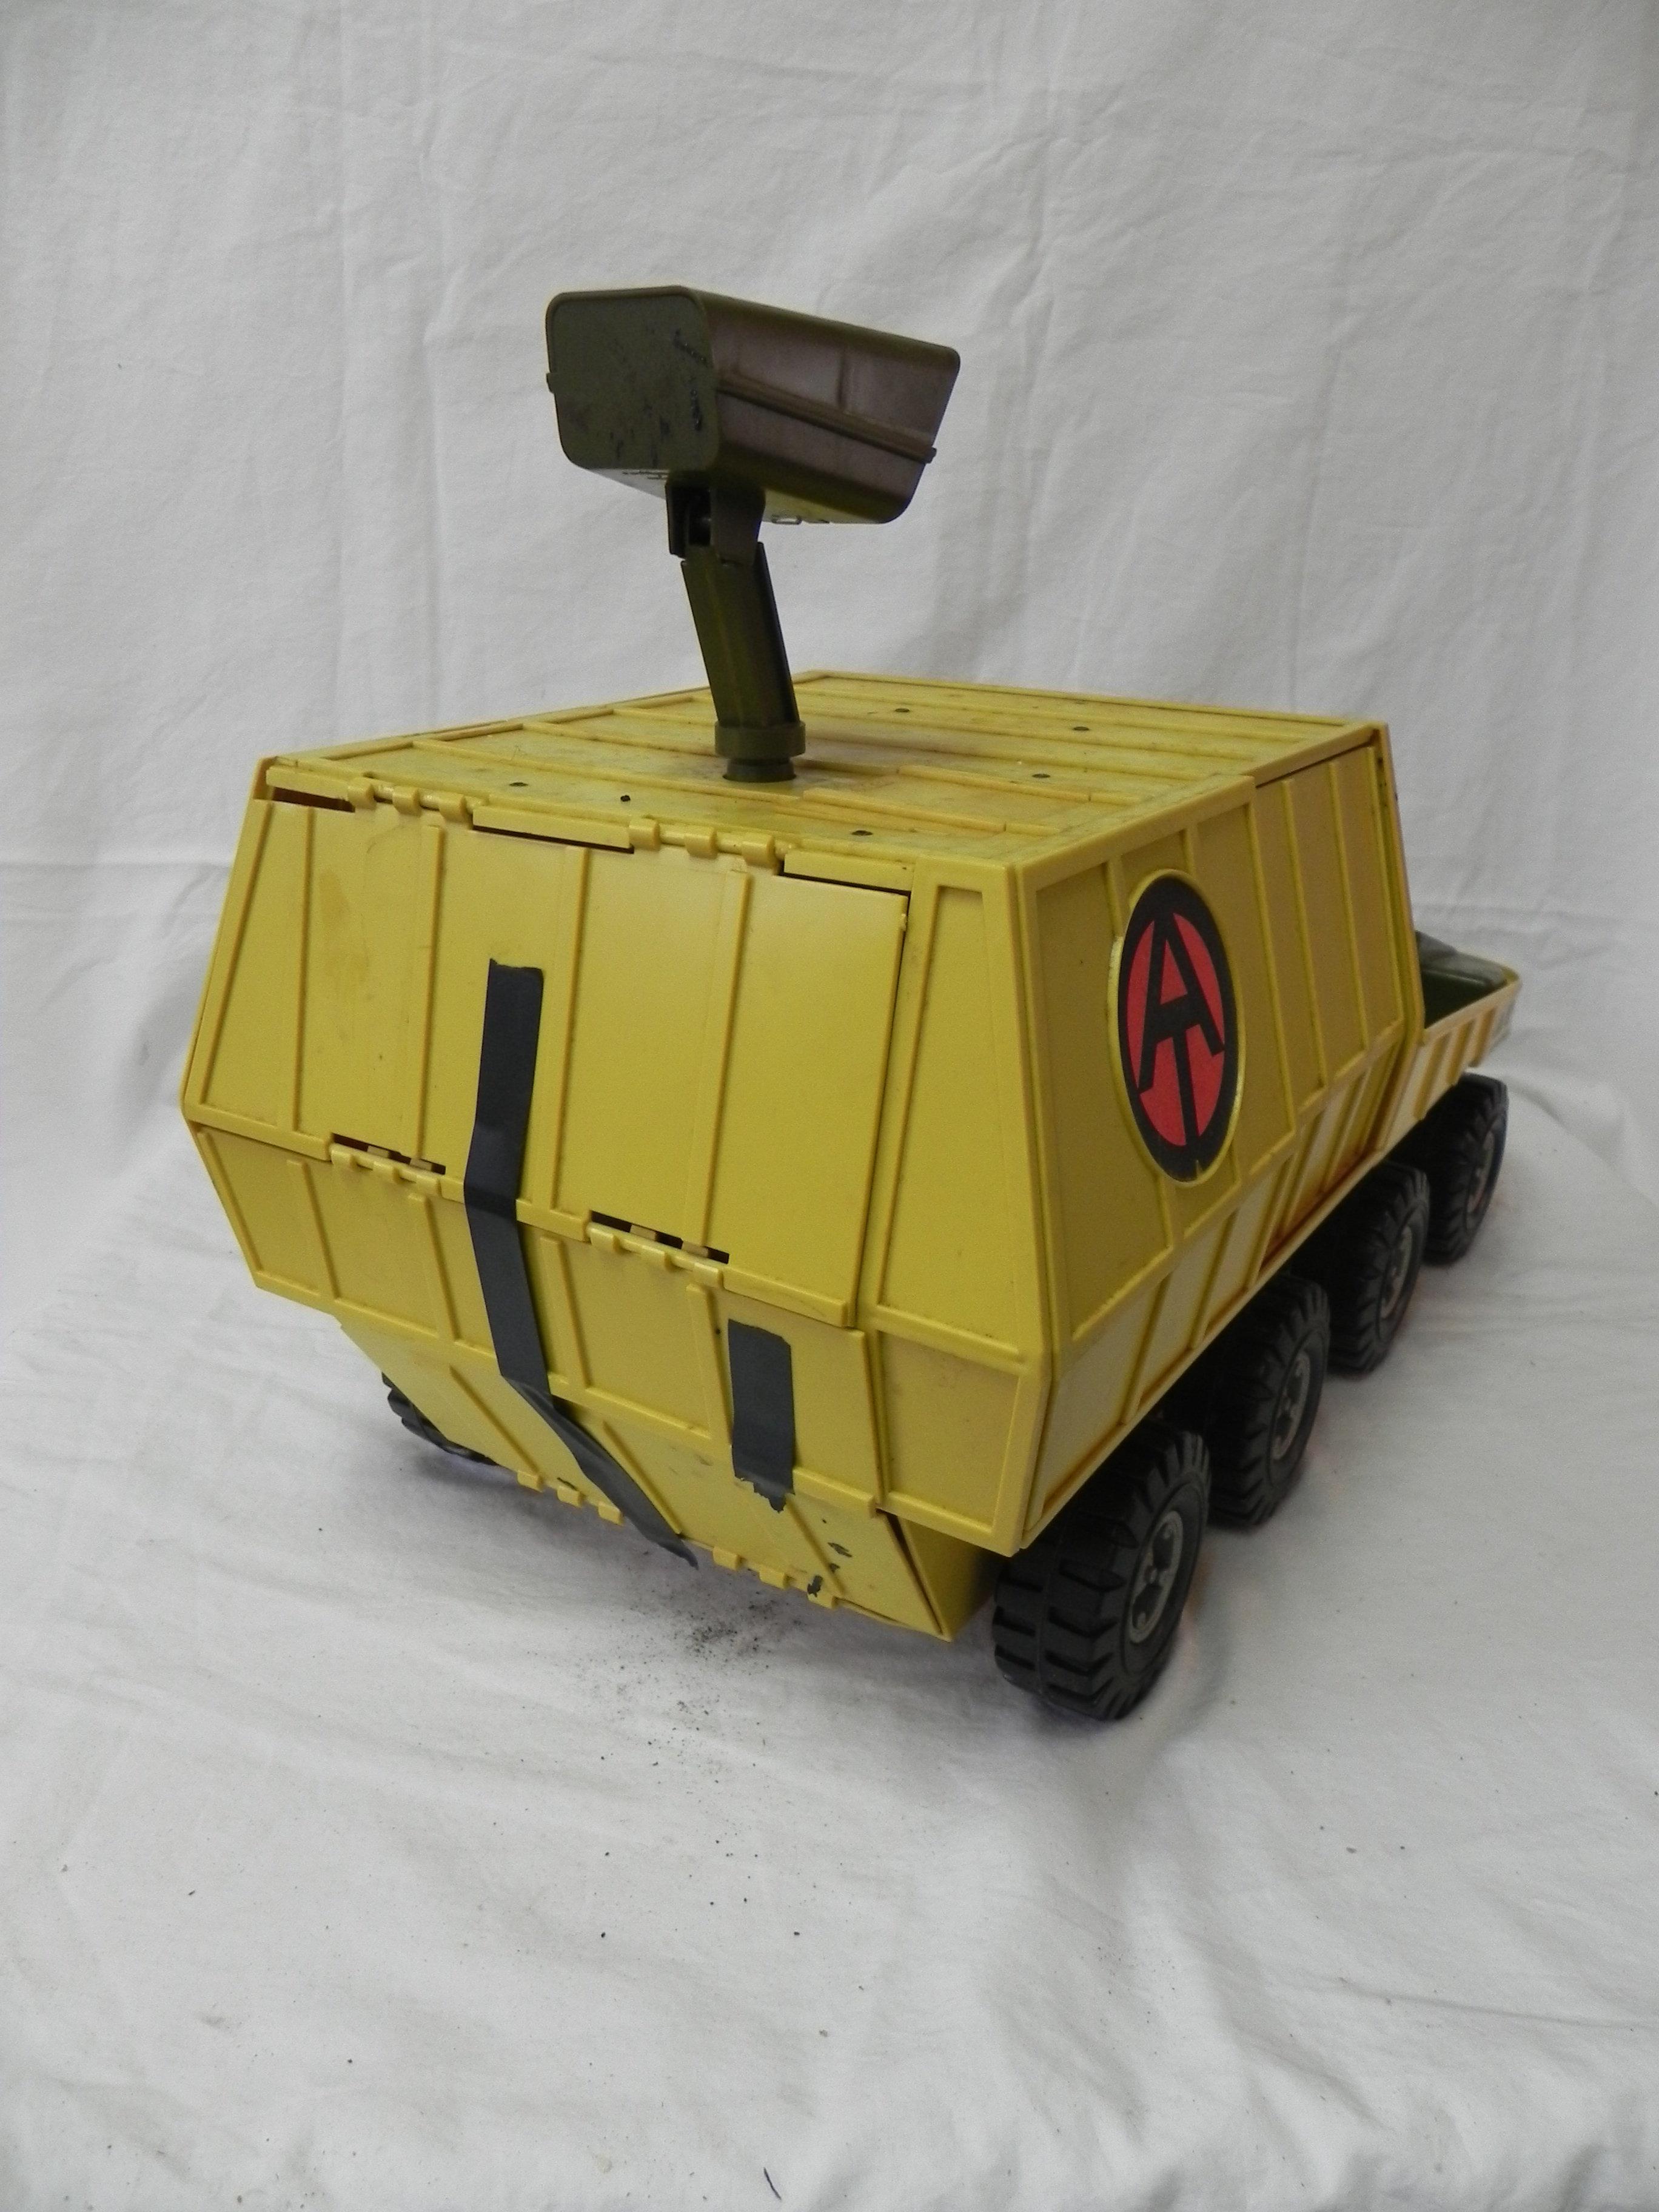 G.I. Joe “At-II Experimental” Vehicle